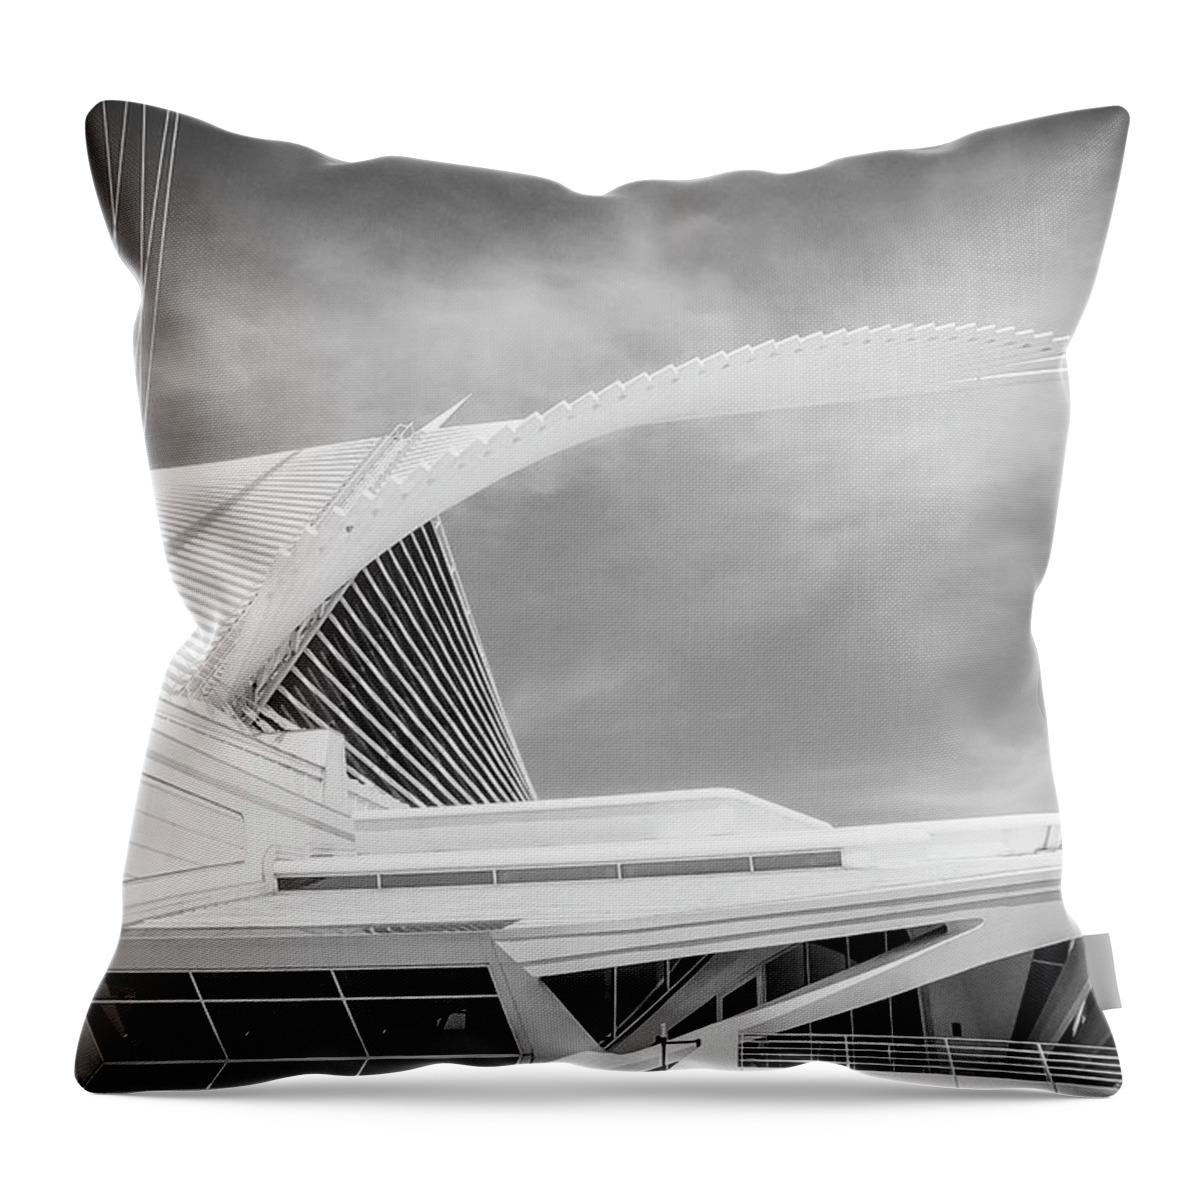 Mam Throw Pillow featuring the photograph Calatrava - Milwaukee Art Museum by John Roach